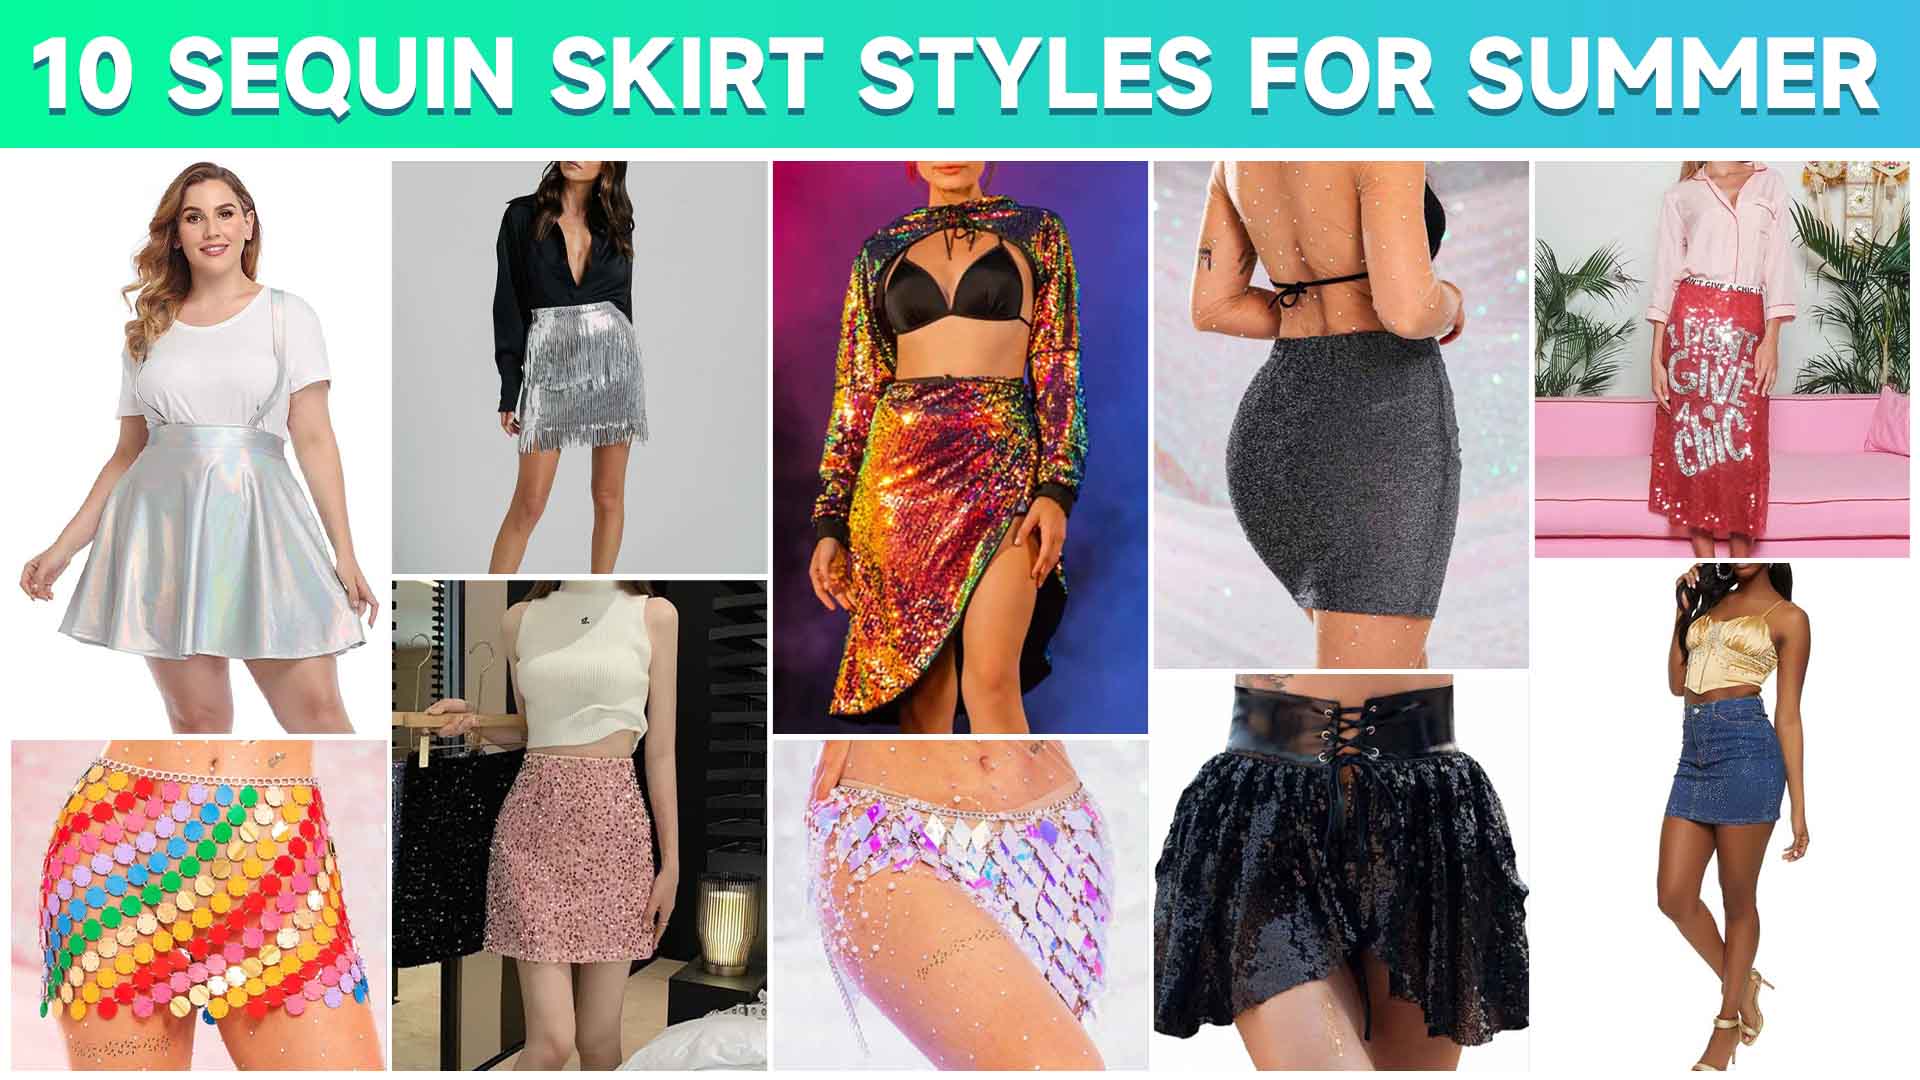 10 Sequin Skirt Styles For Summer